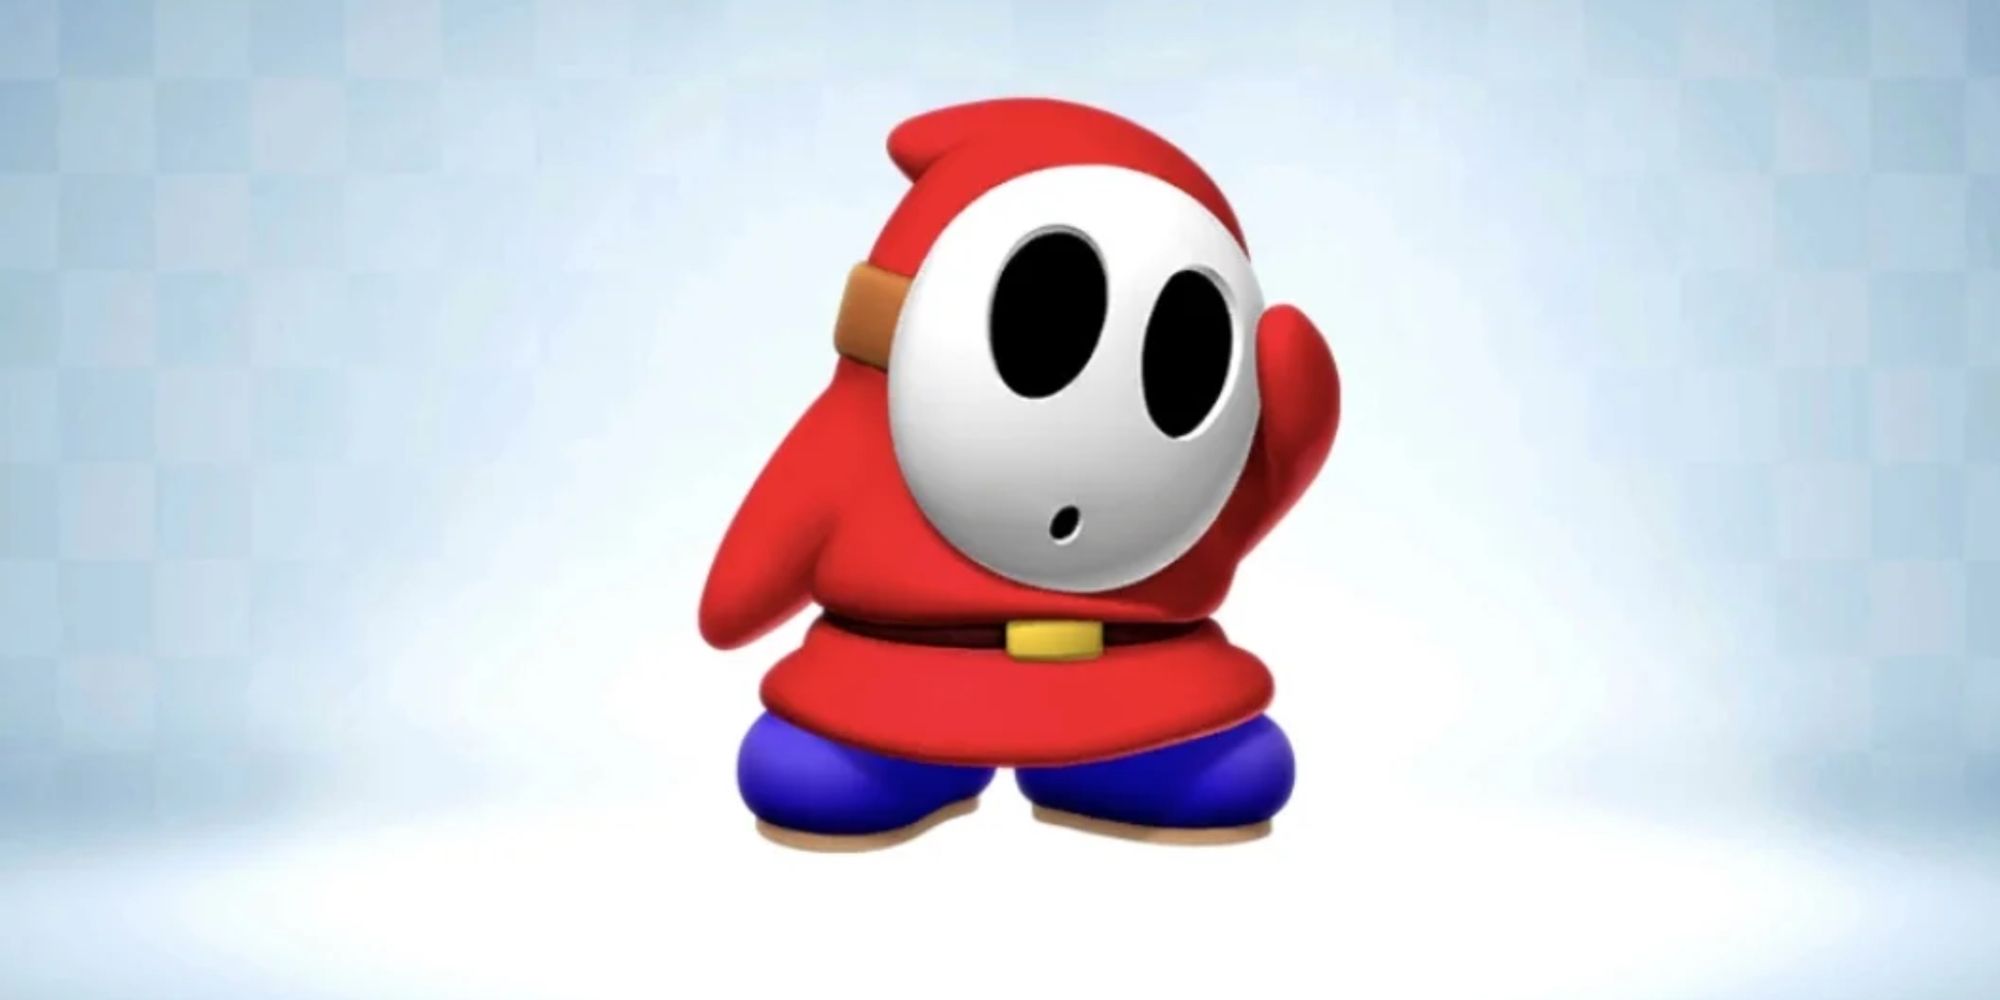 Shy Guy from Mario